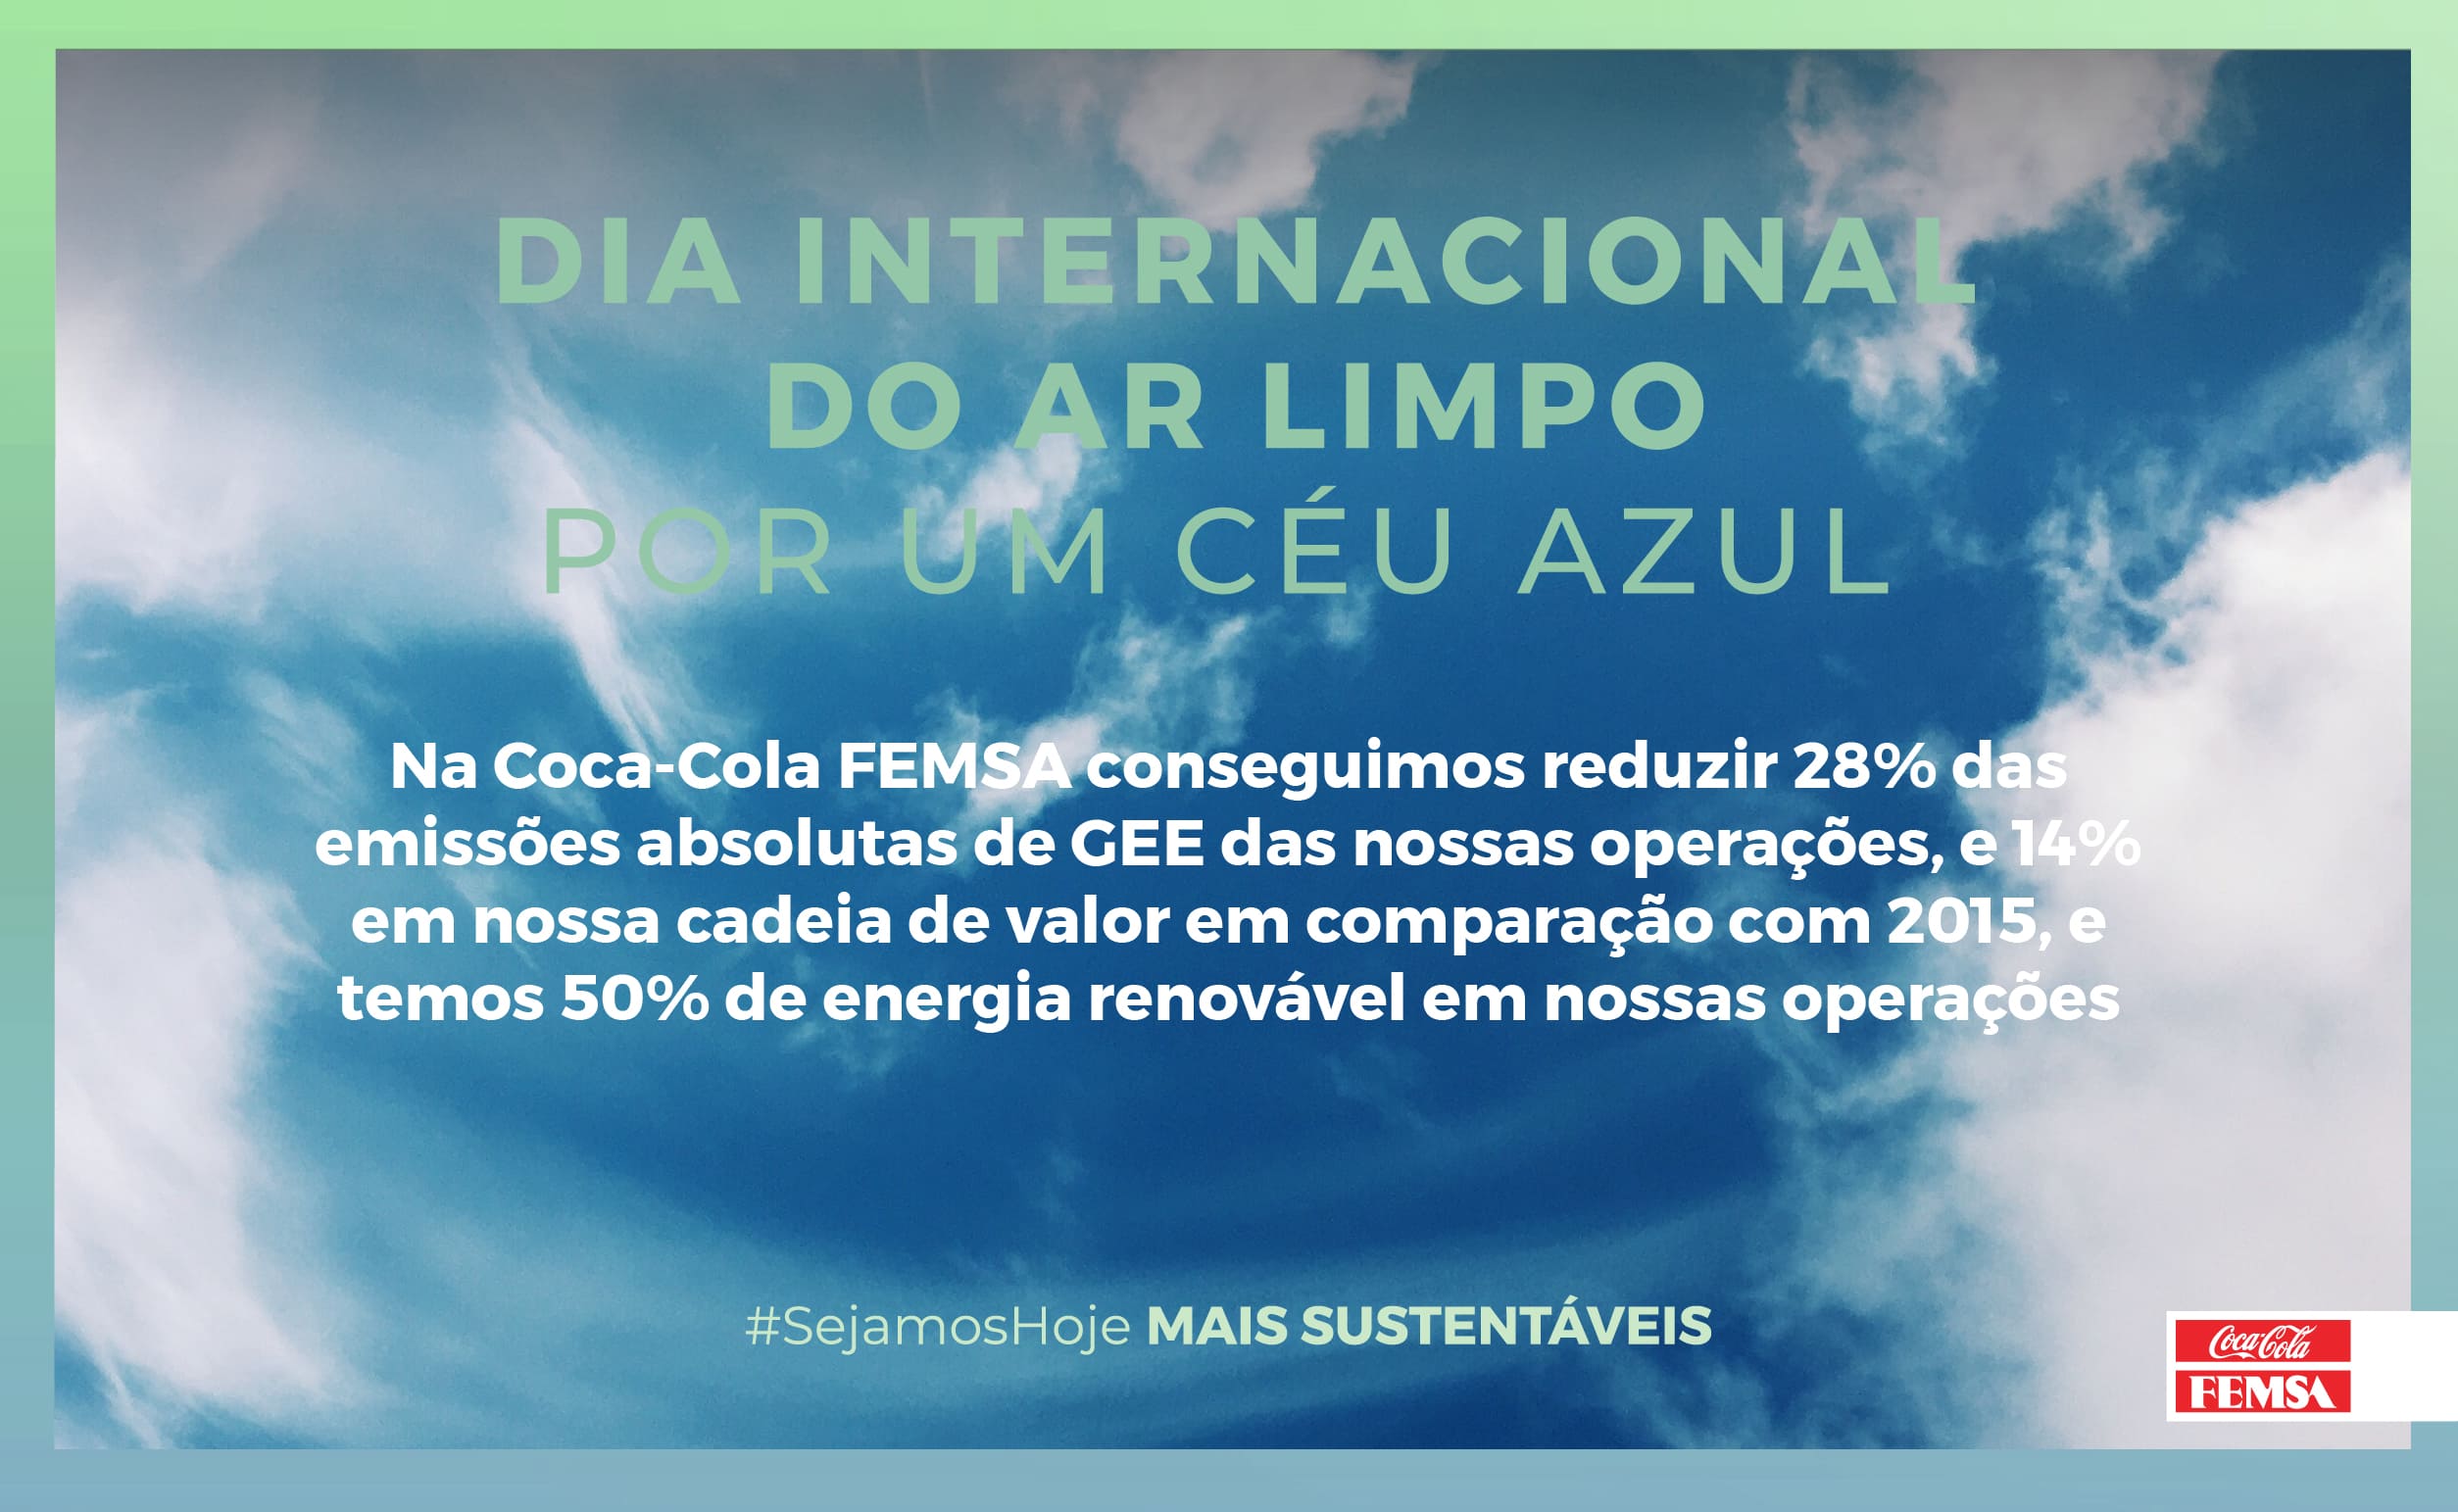 Na Coca-Cola FEMSA trabalhamos por um futuro sustentável com ar limpo e céus azuis